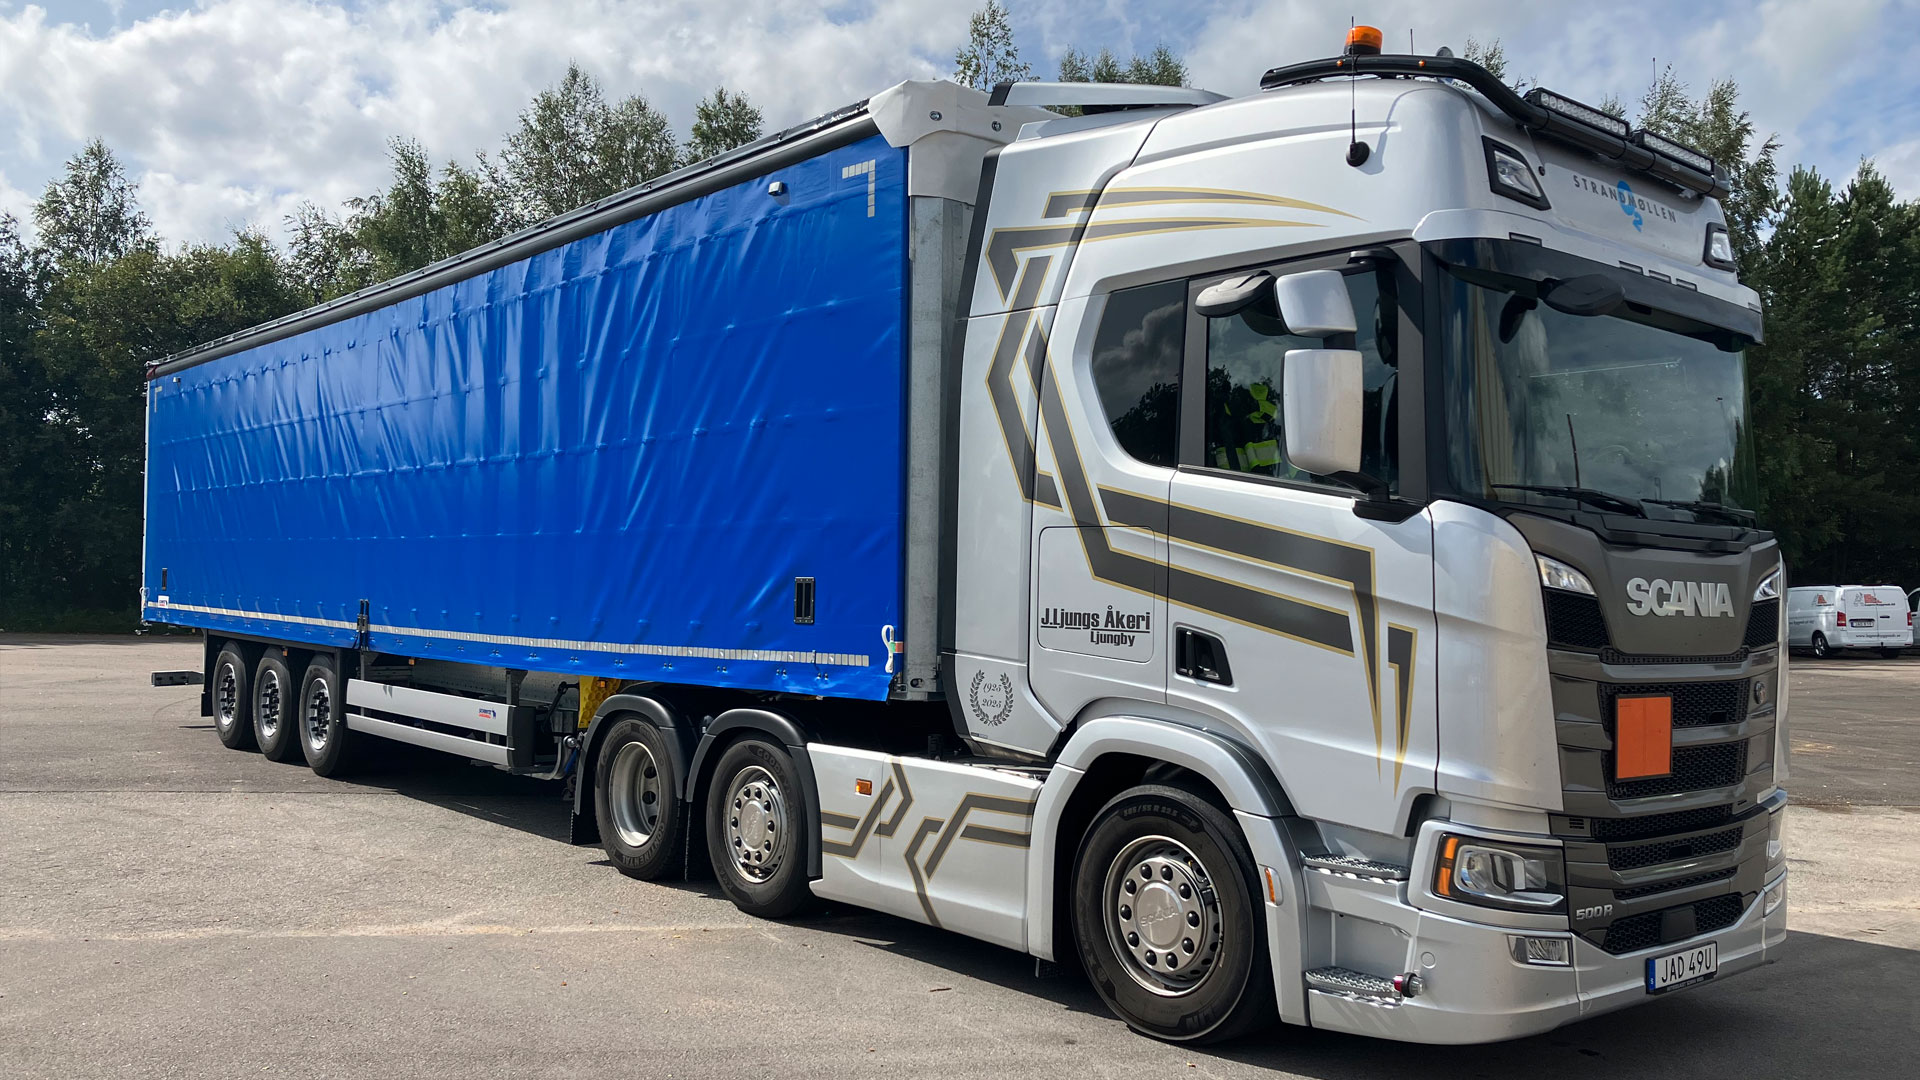 Atteviks har levererat en Scania R500 med trailer till J. Ljungs Åkeri.